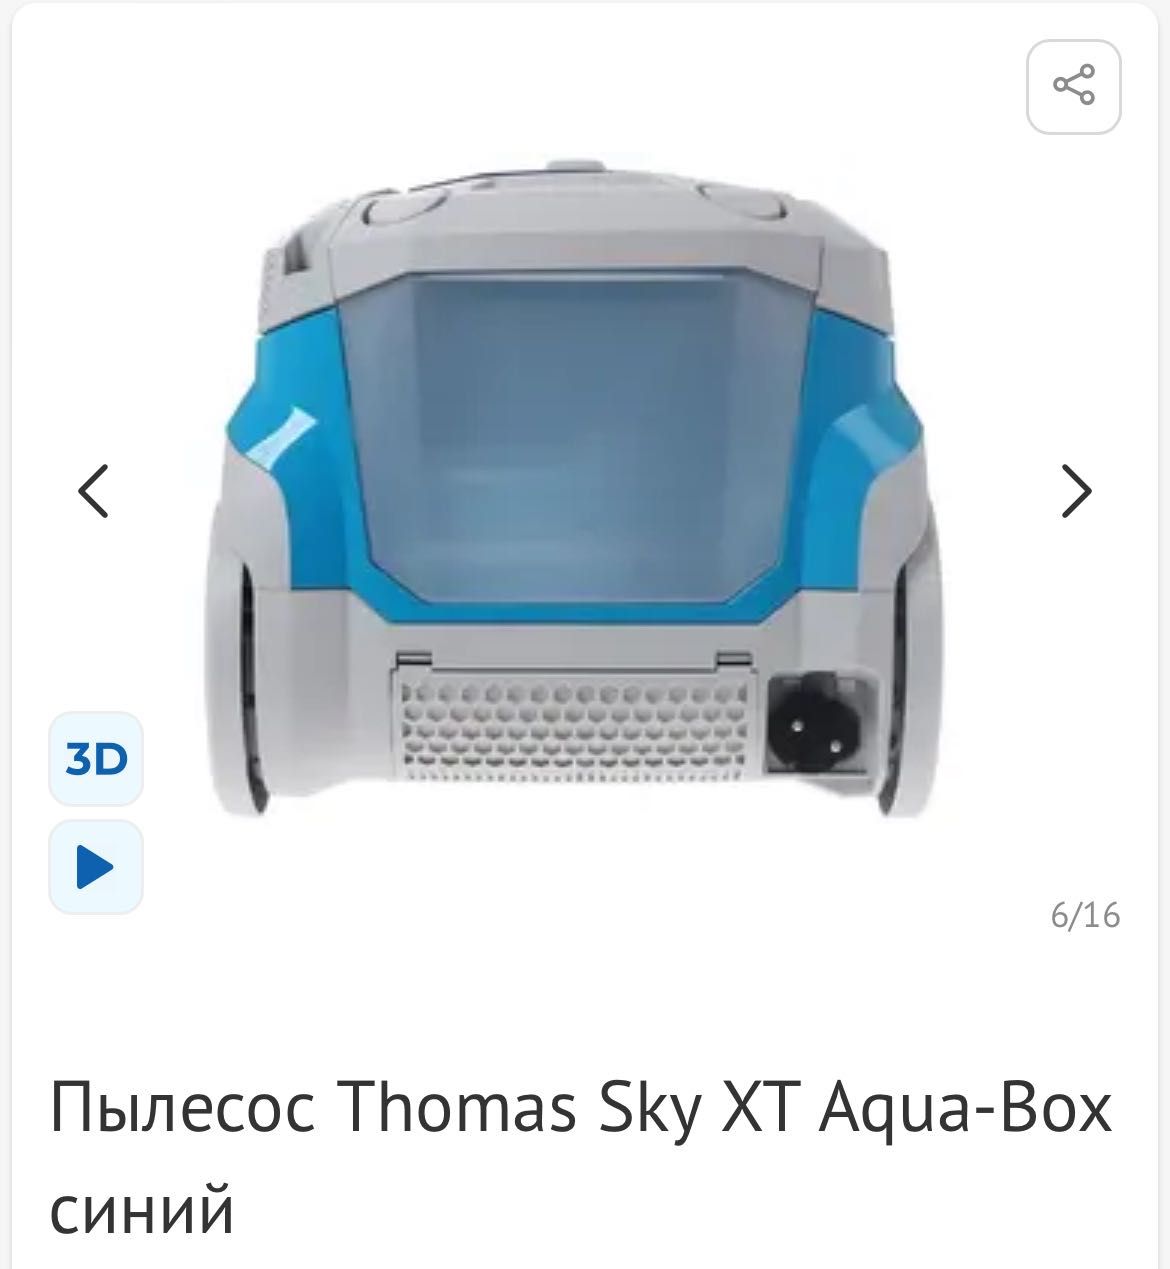 Thomas  Aqua-Box Sky XT